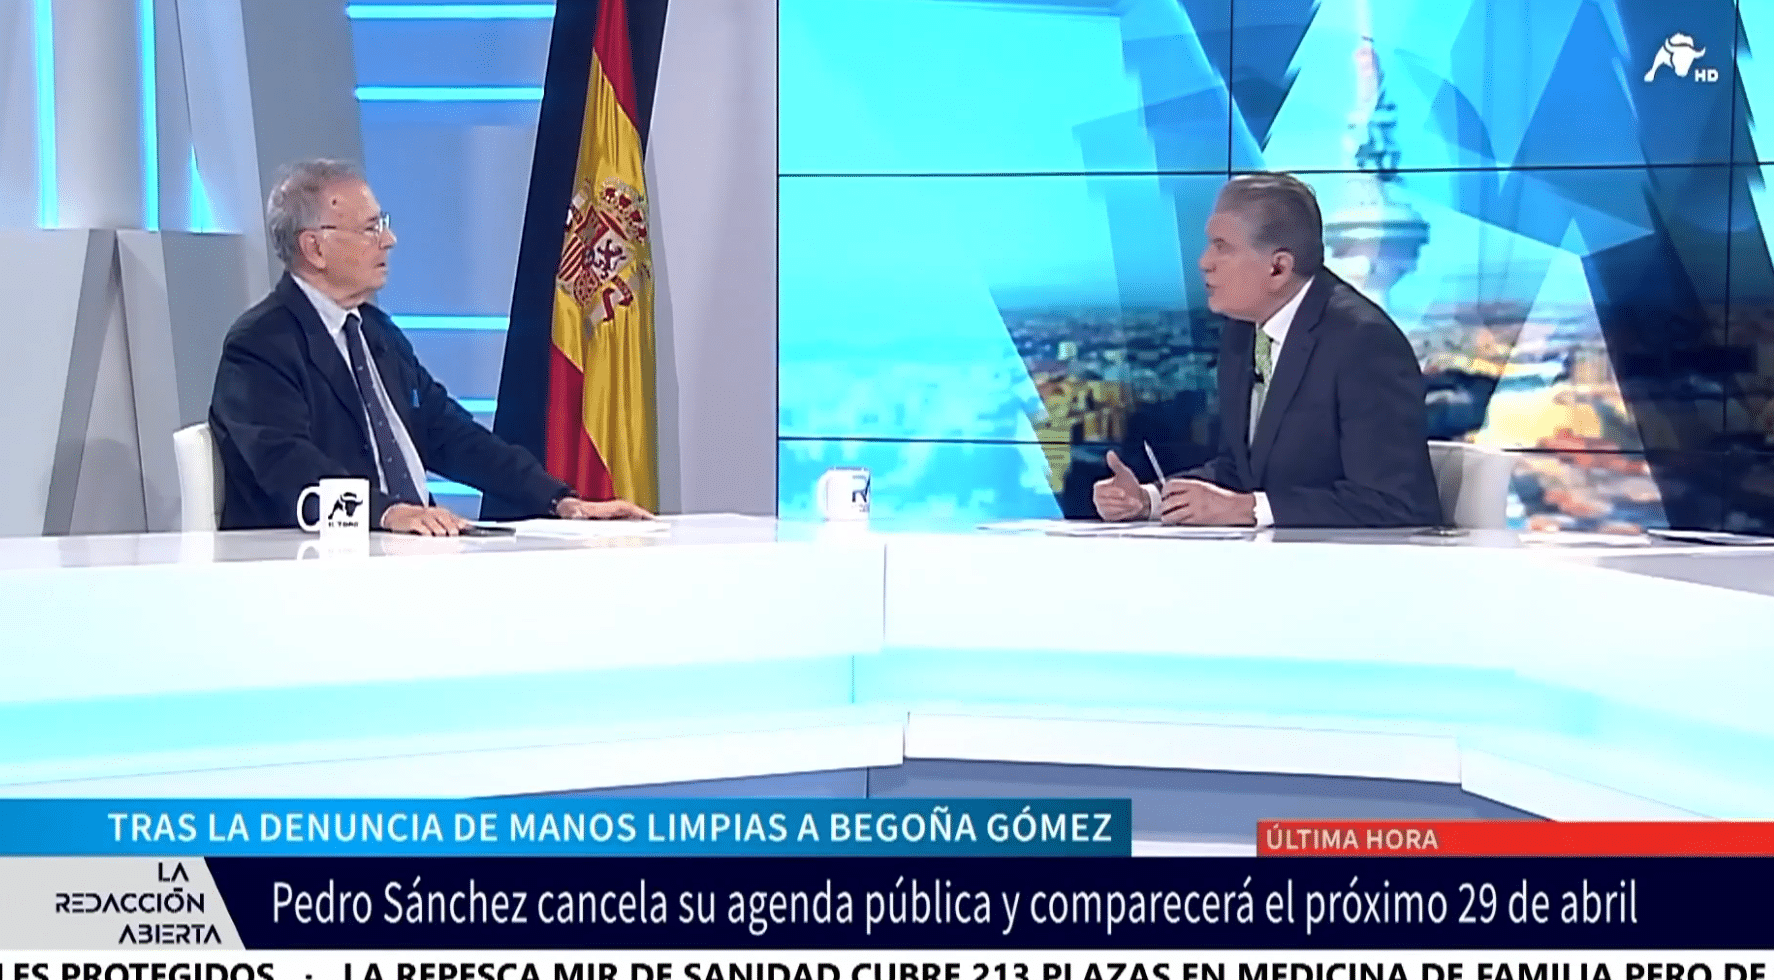 Entrevista al fundador de Manos Limpias, Miguel Bernad, tras la denuncia a Begoña Gómez: «Hay indicios razonables de delito penal»